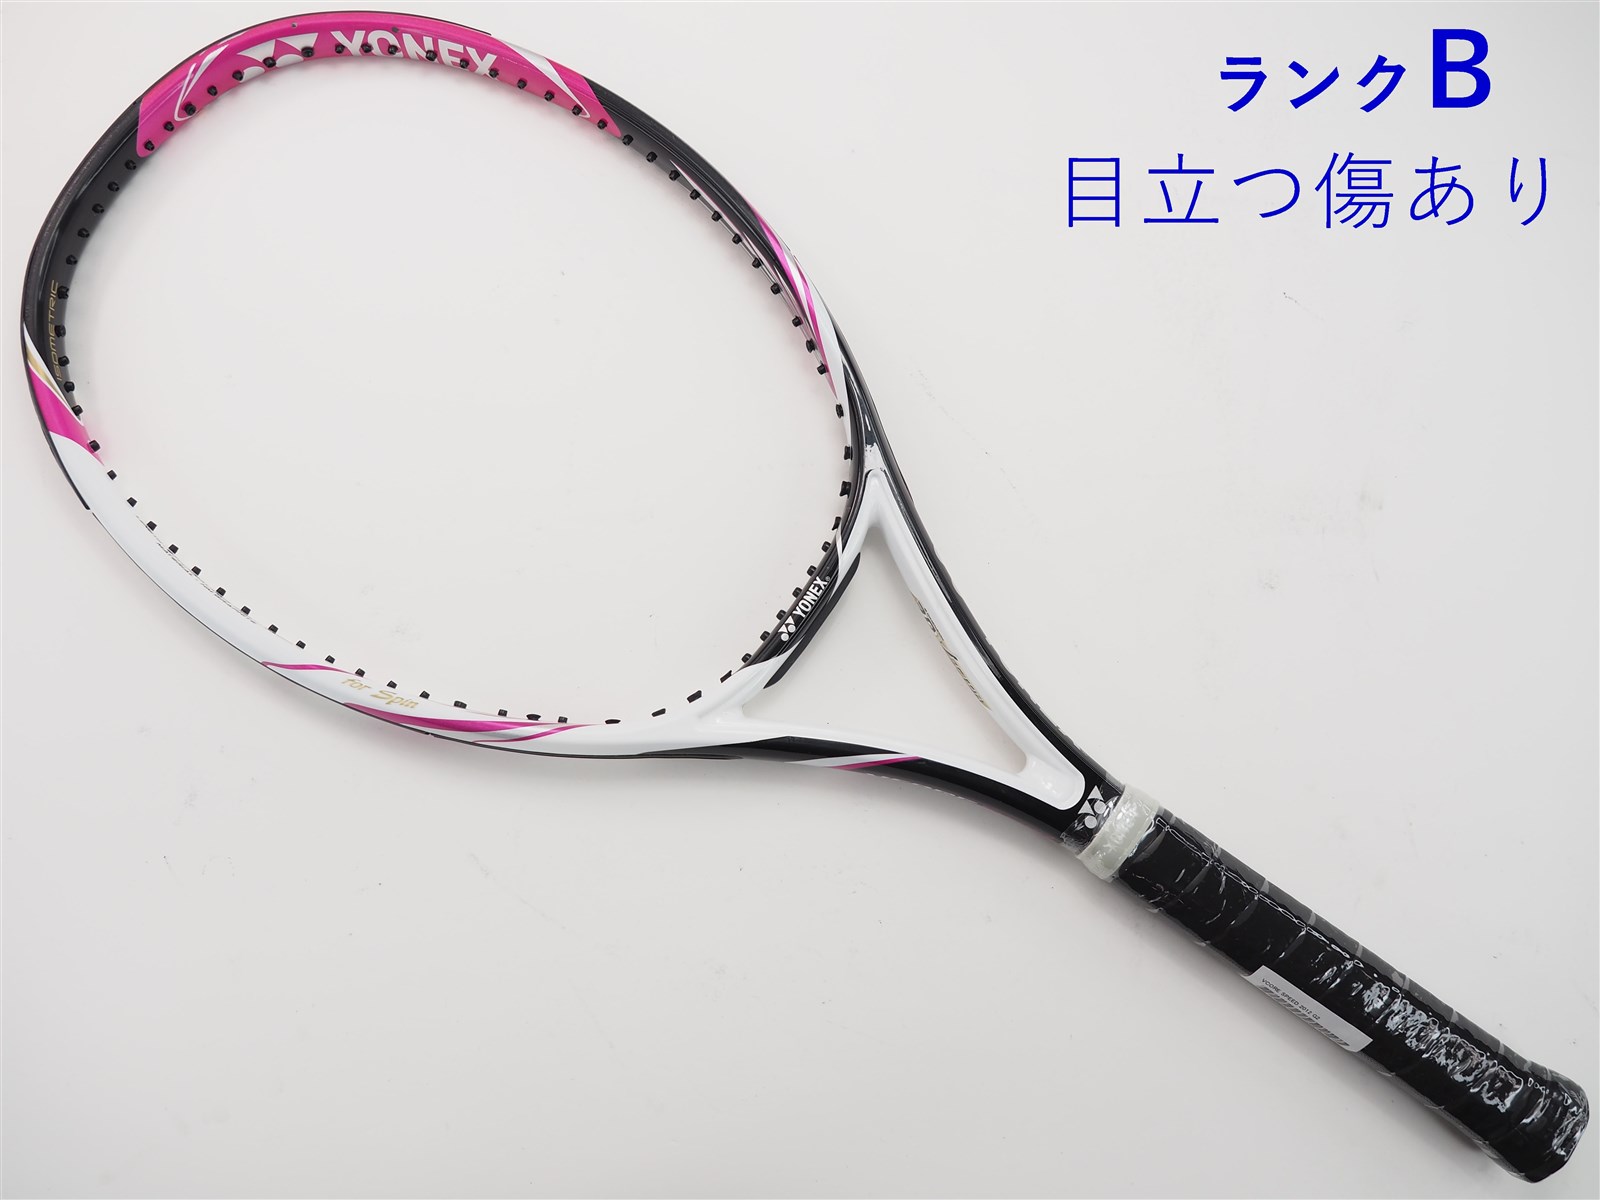 テニスラケット ヨネックス ブイコア スピード 2012年モデル【DEMO ...